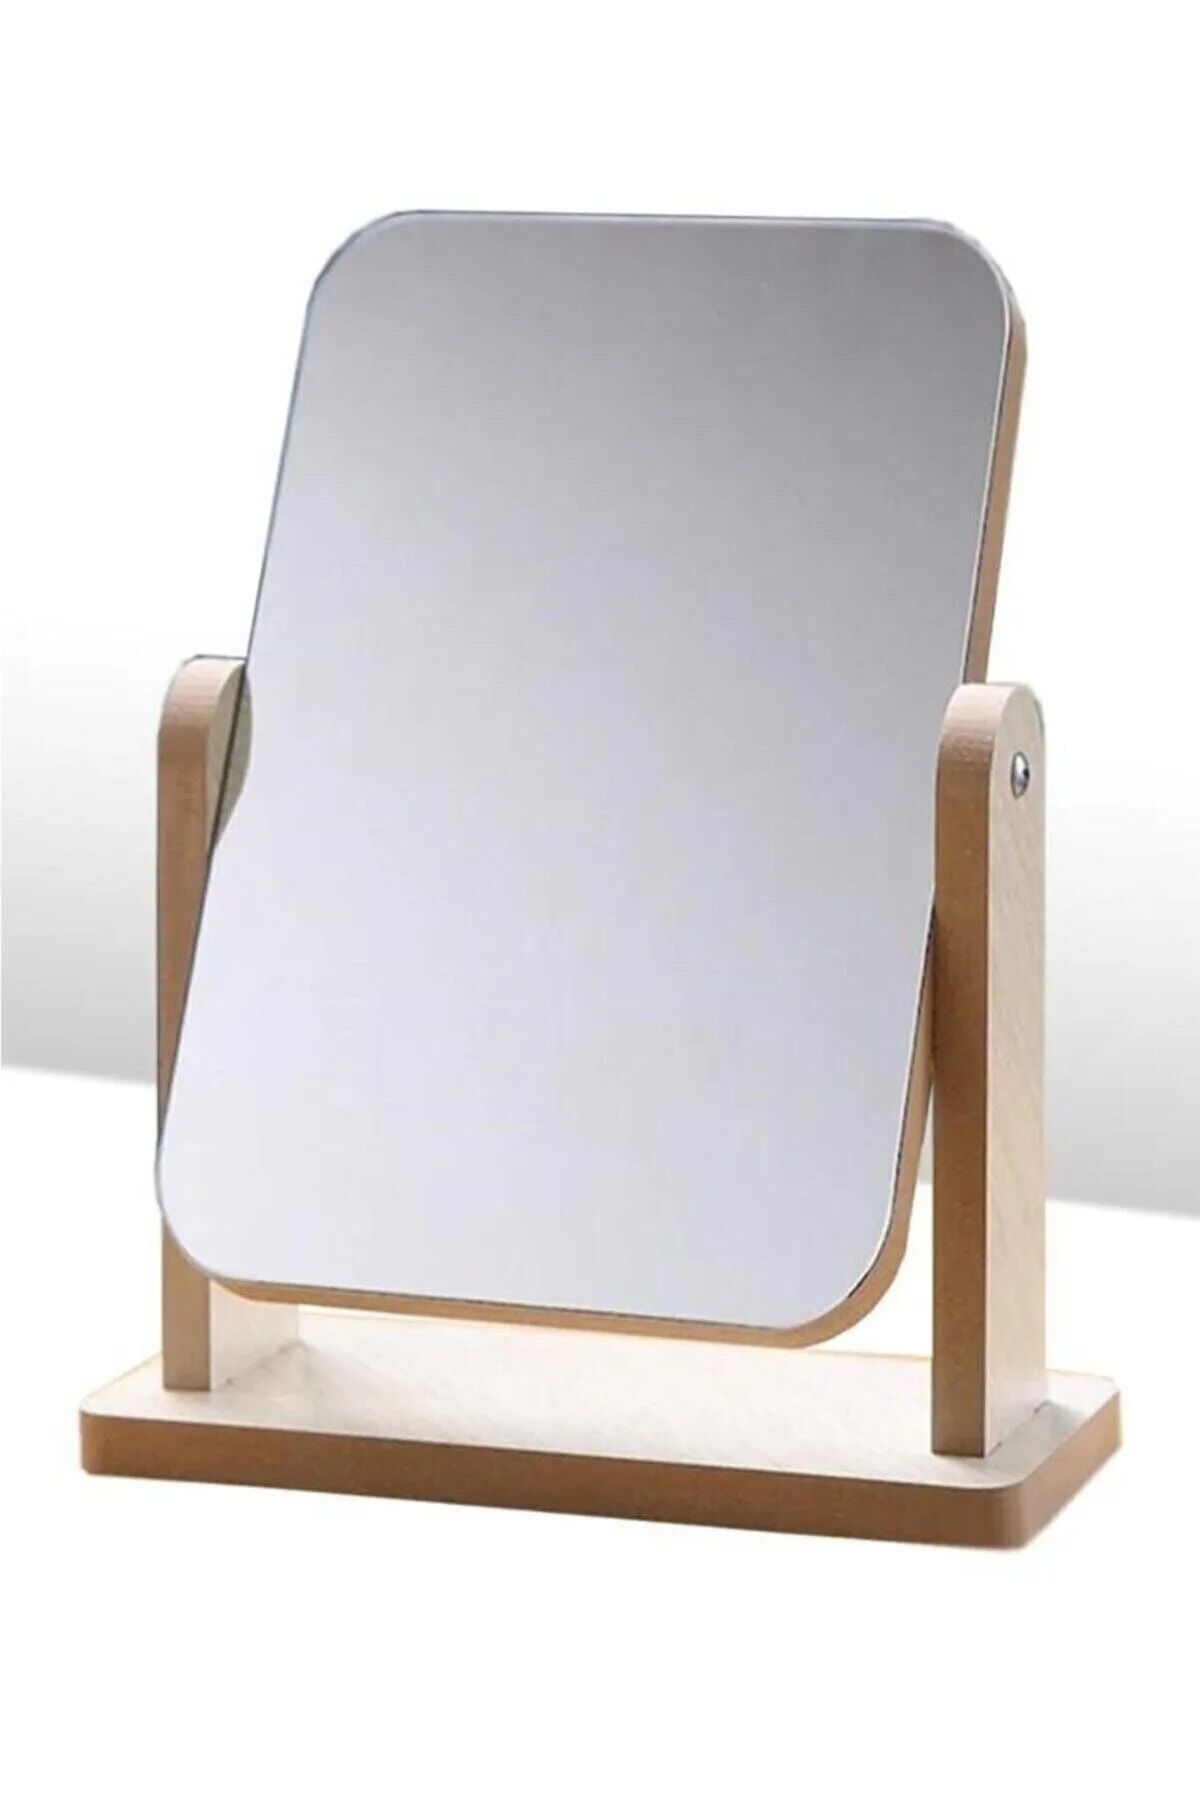 ONELİGHT El Aynası Masa Aynası Makyaj Aynası Ayarlanabilir Kare Makeup Mirror 22cm Ahşap